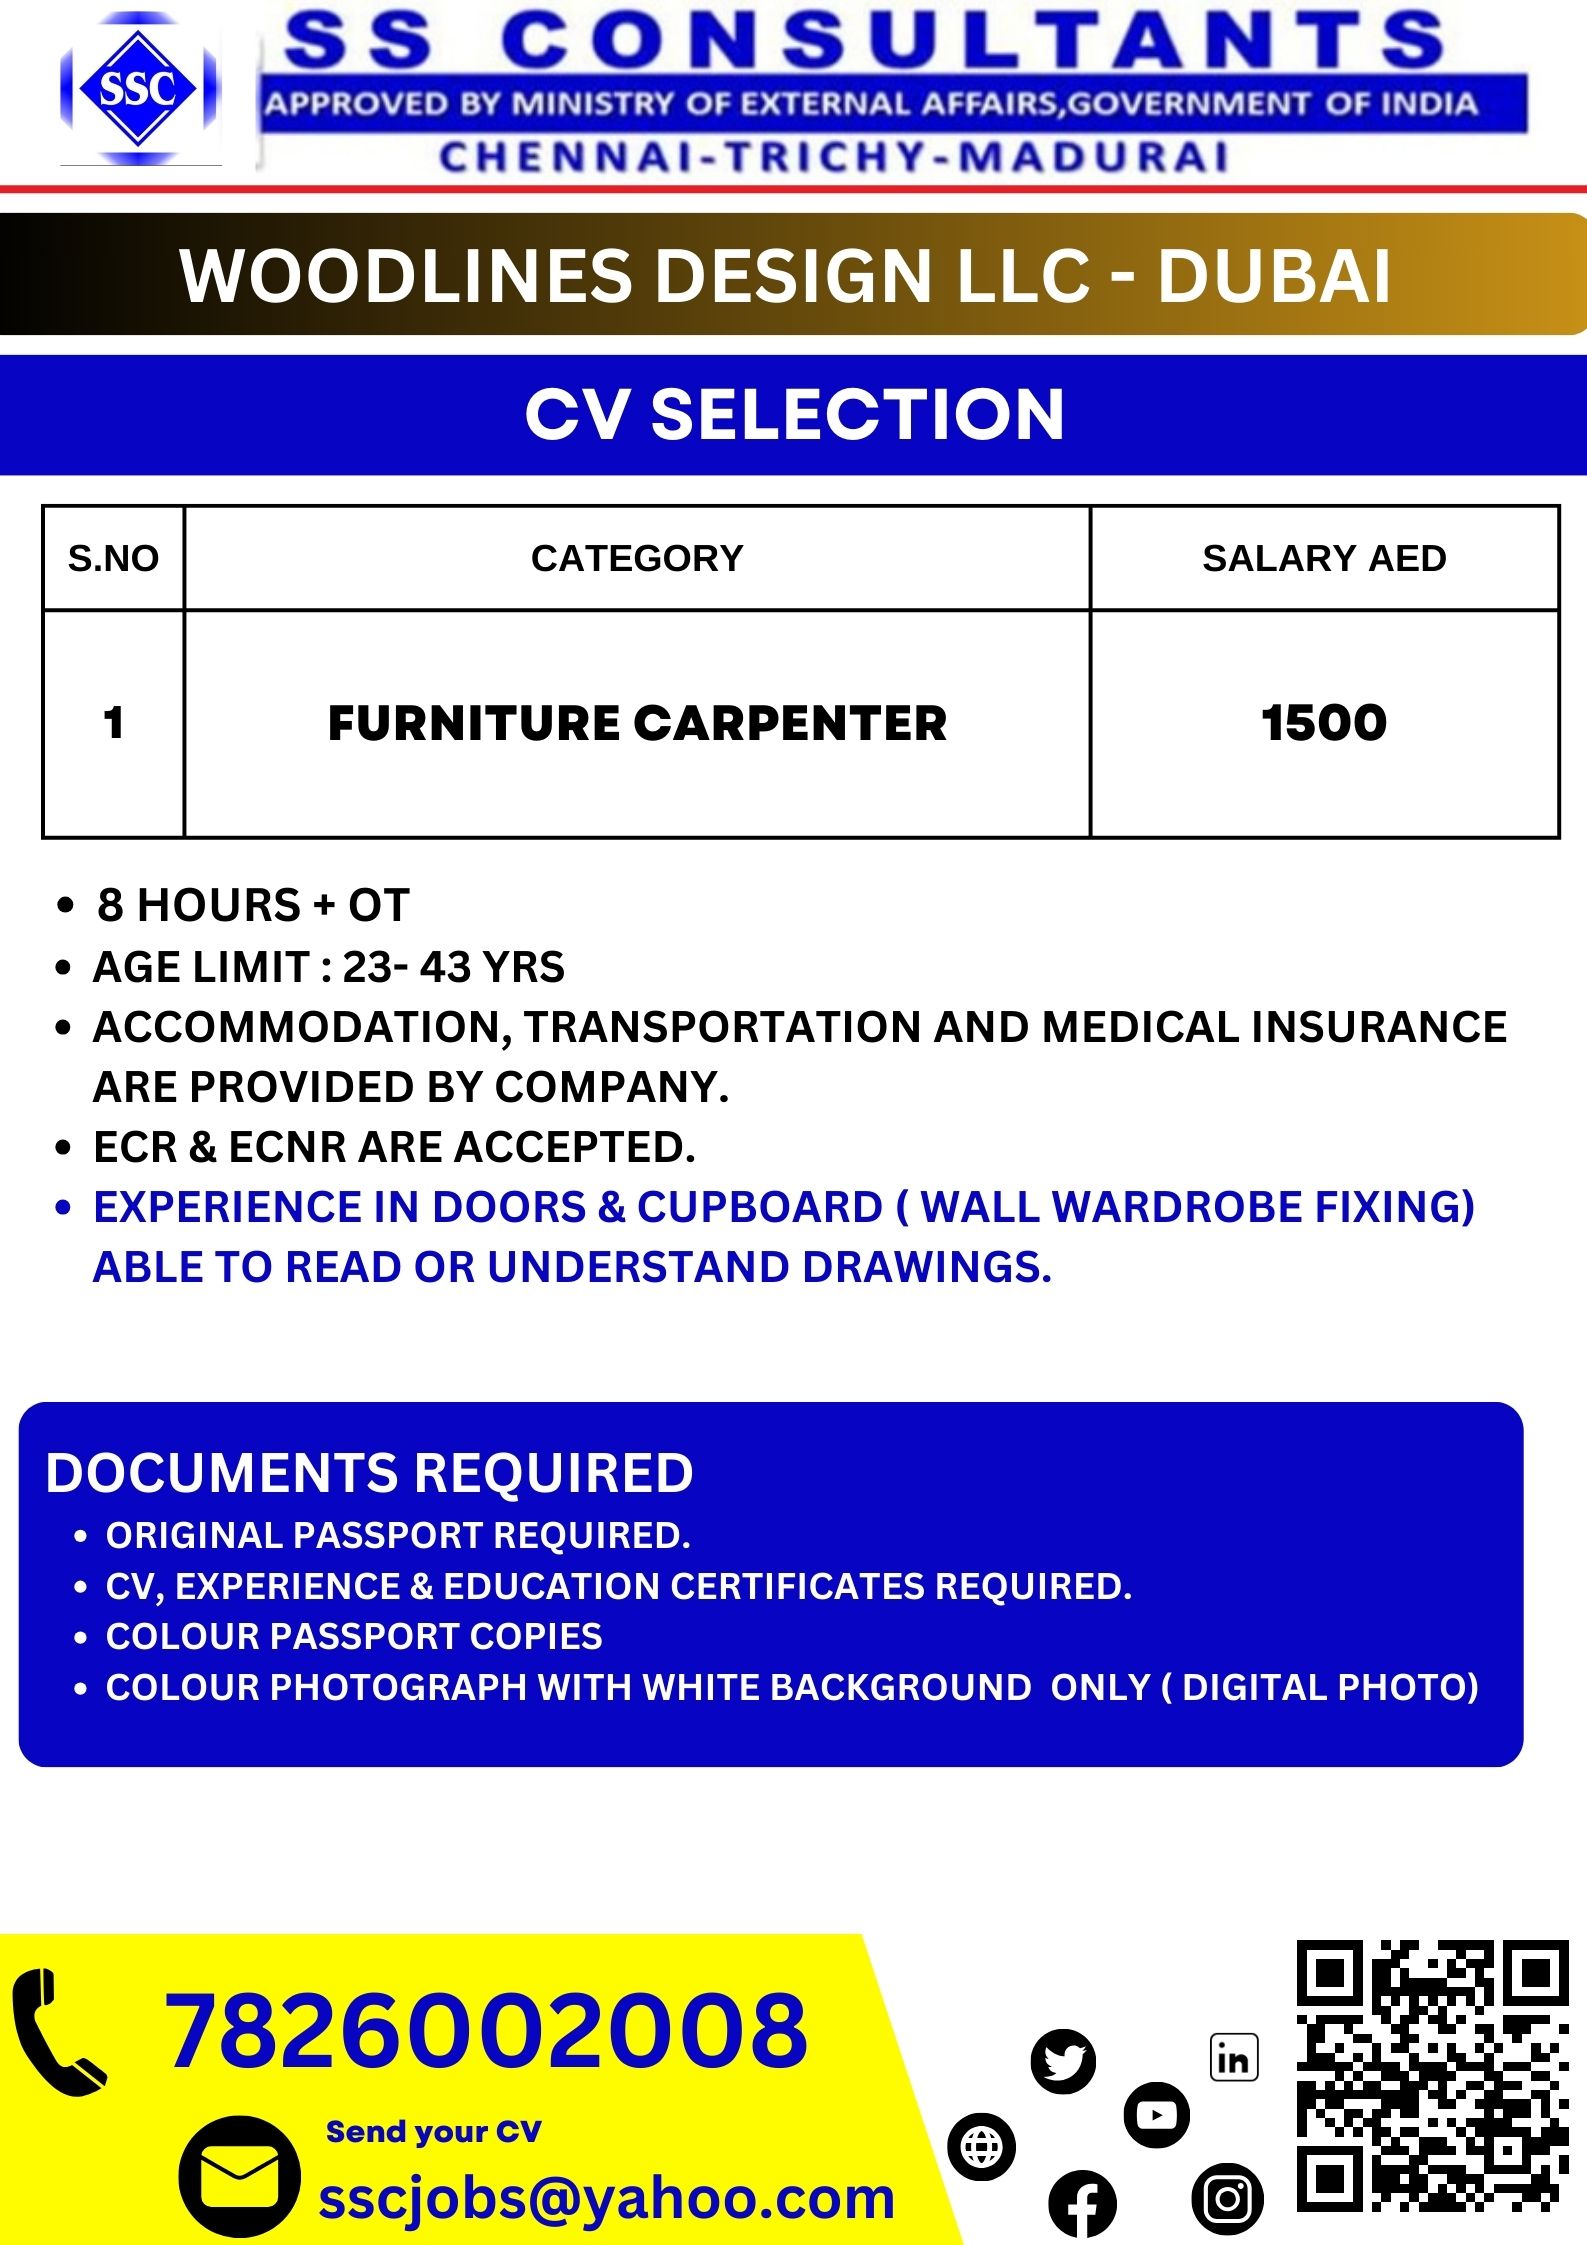 Furniture carpenter | Woodlines Design LLC – Dubai